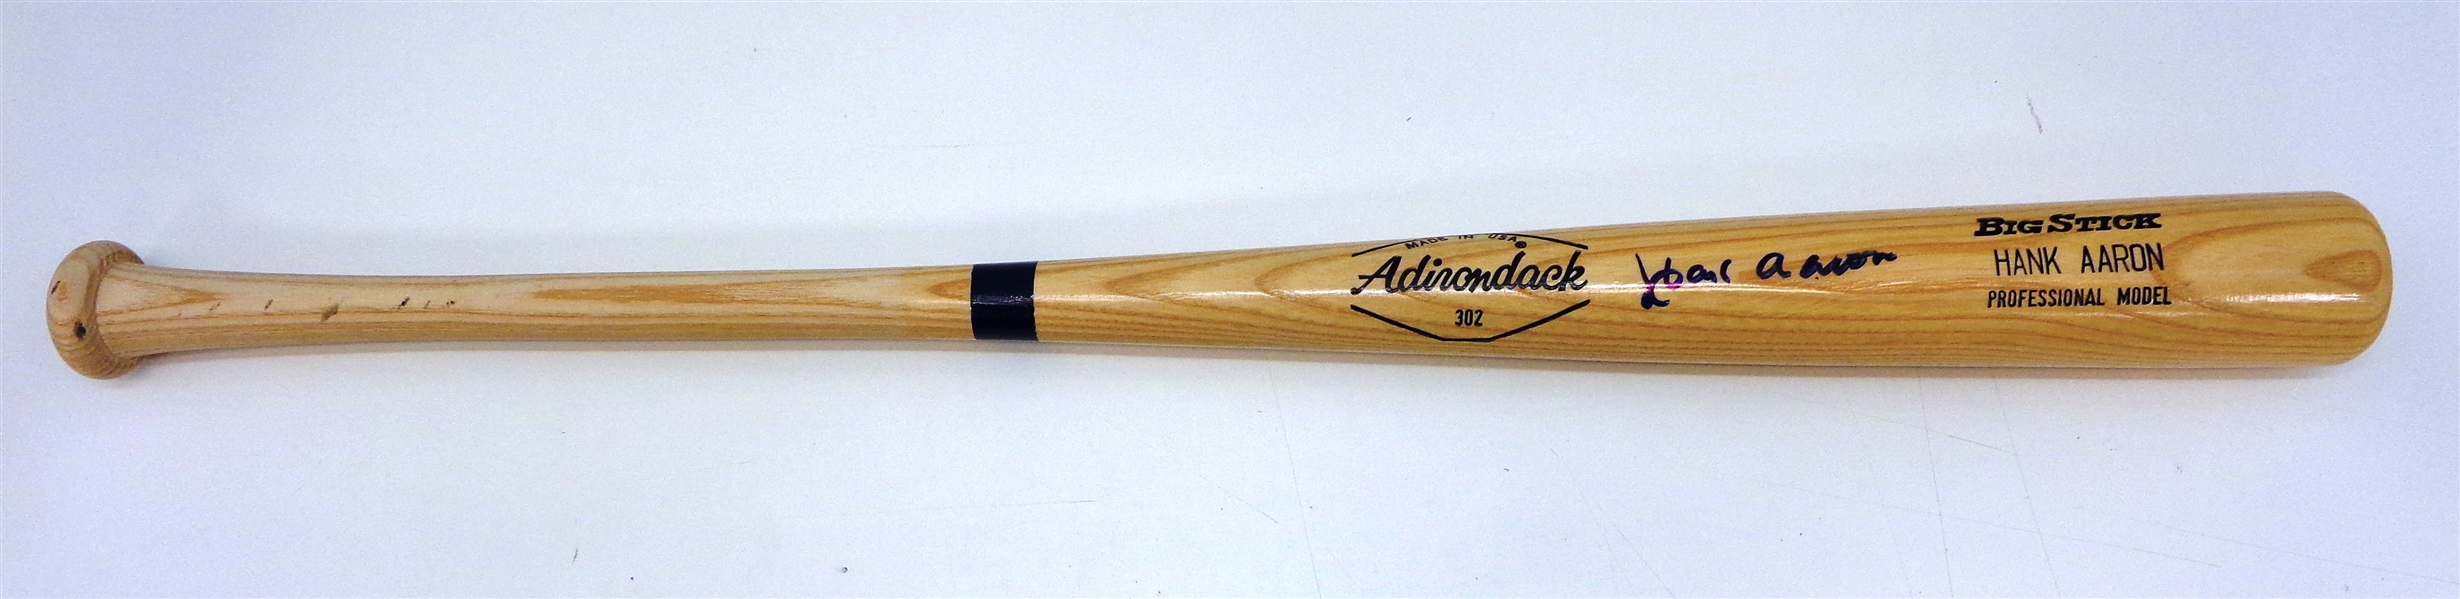 Hank Aaron Autographed Bat